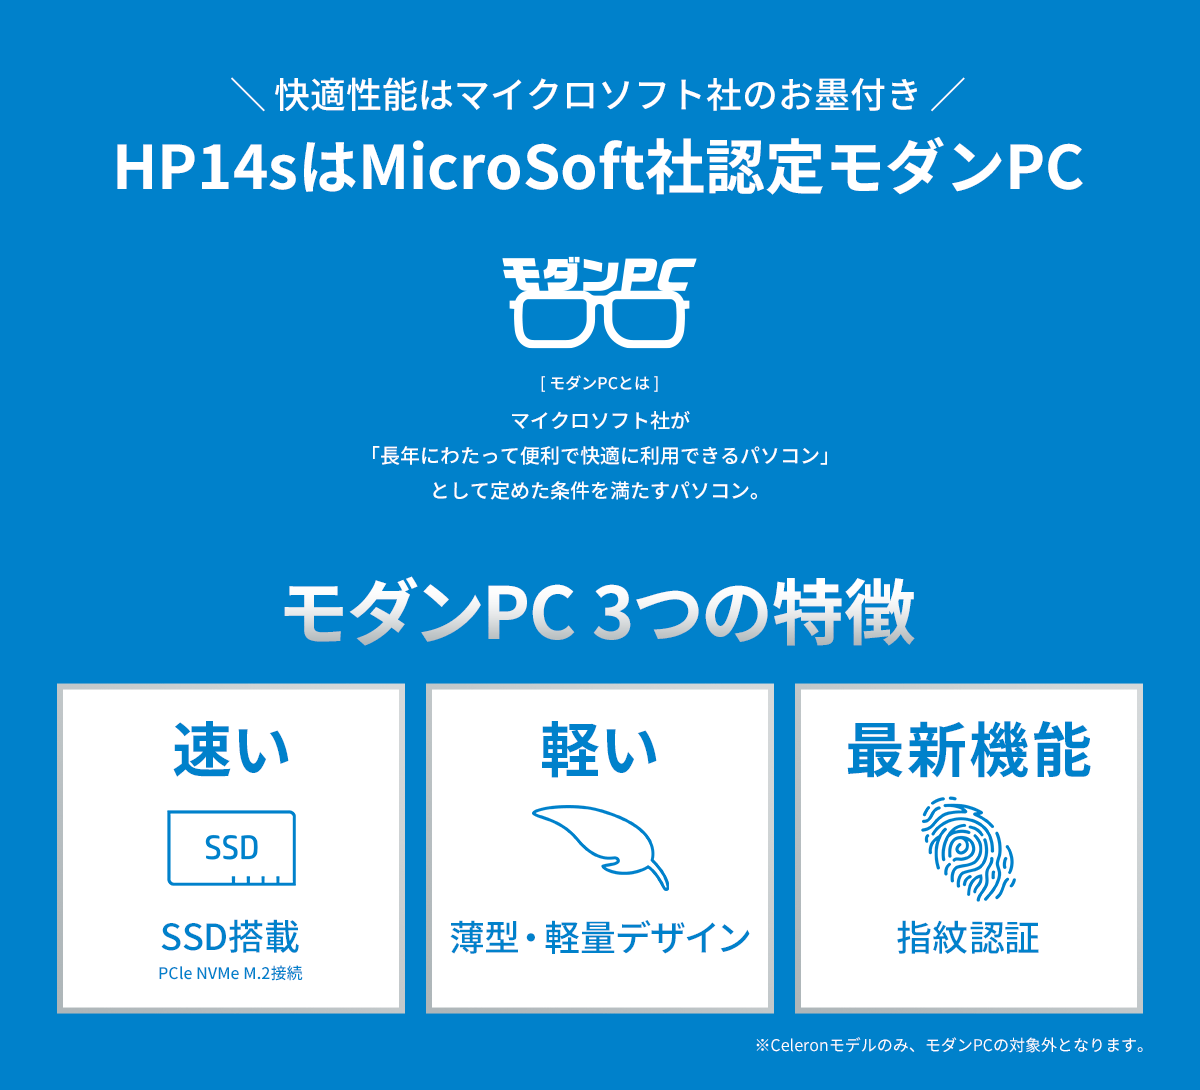 ＼ 快適性能はマイクロソフト社のお墨付き ／HP14sはMicroSoft社認定モダンPC モダンPC 3つの特徴「速い：SSD搭載、軽い：薄型・軽量デザイン、最新機能：指紋認証」